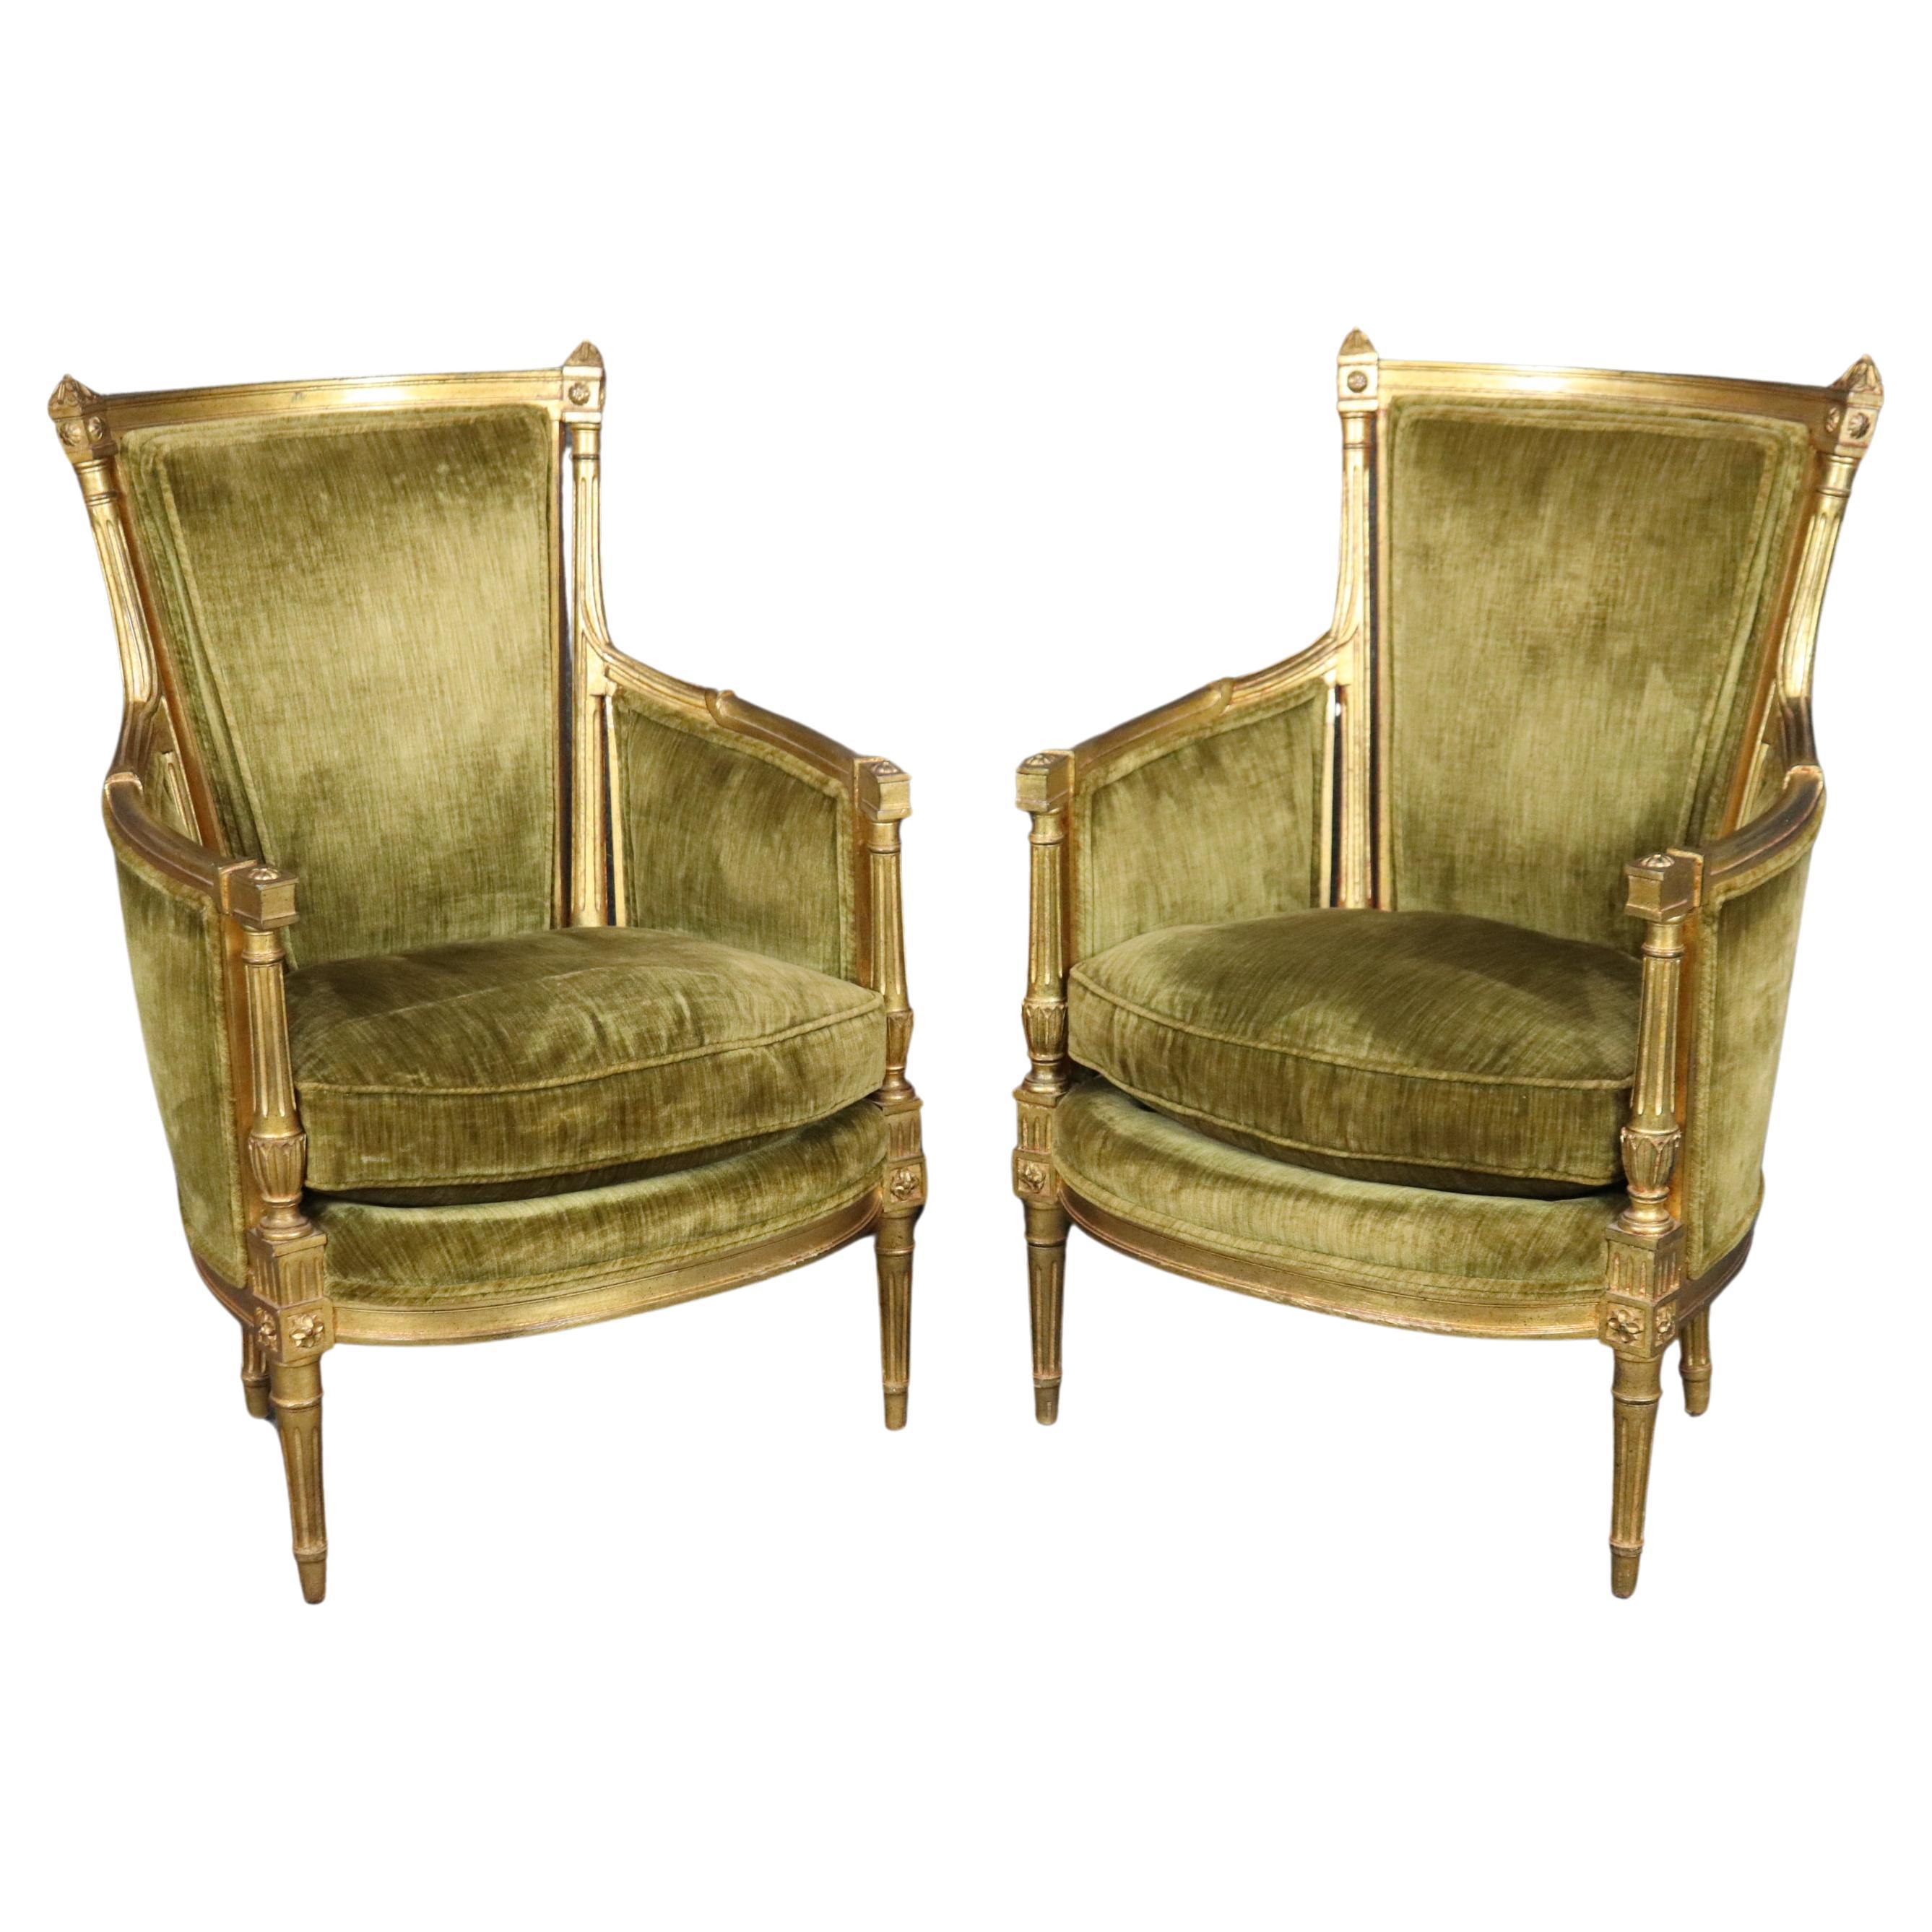 Paire de petites chaises françaises Directoire sculptées et dorées, en velours vert, de type Bergere